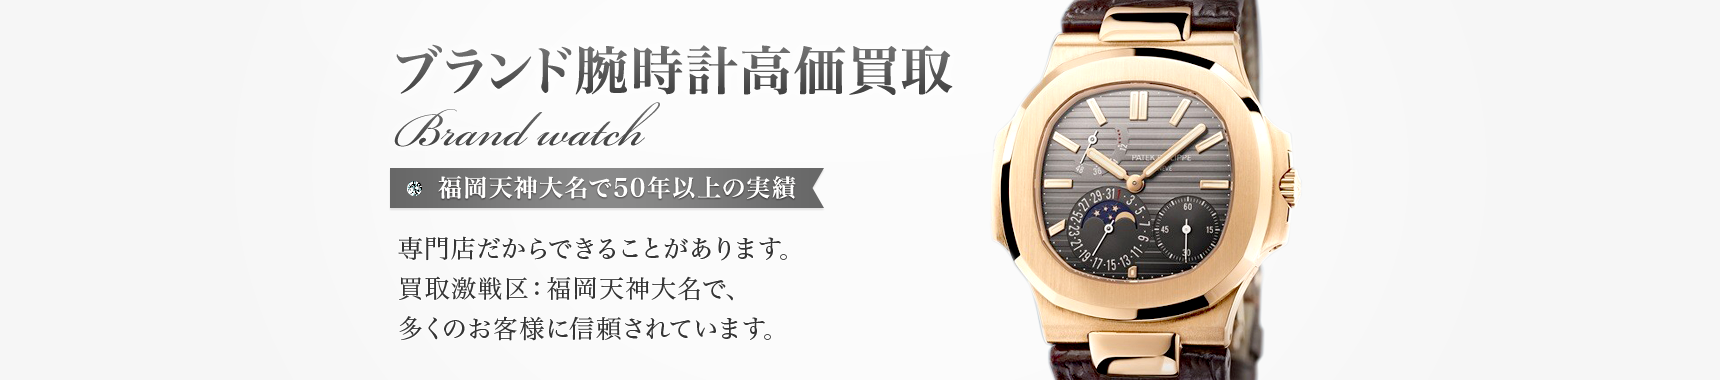 ブランド腕時計高価買取